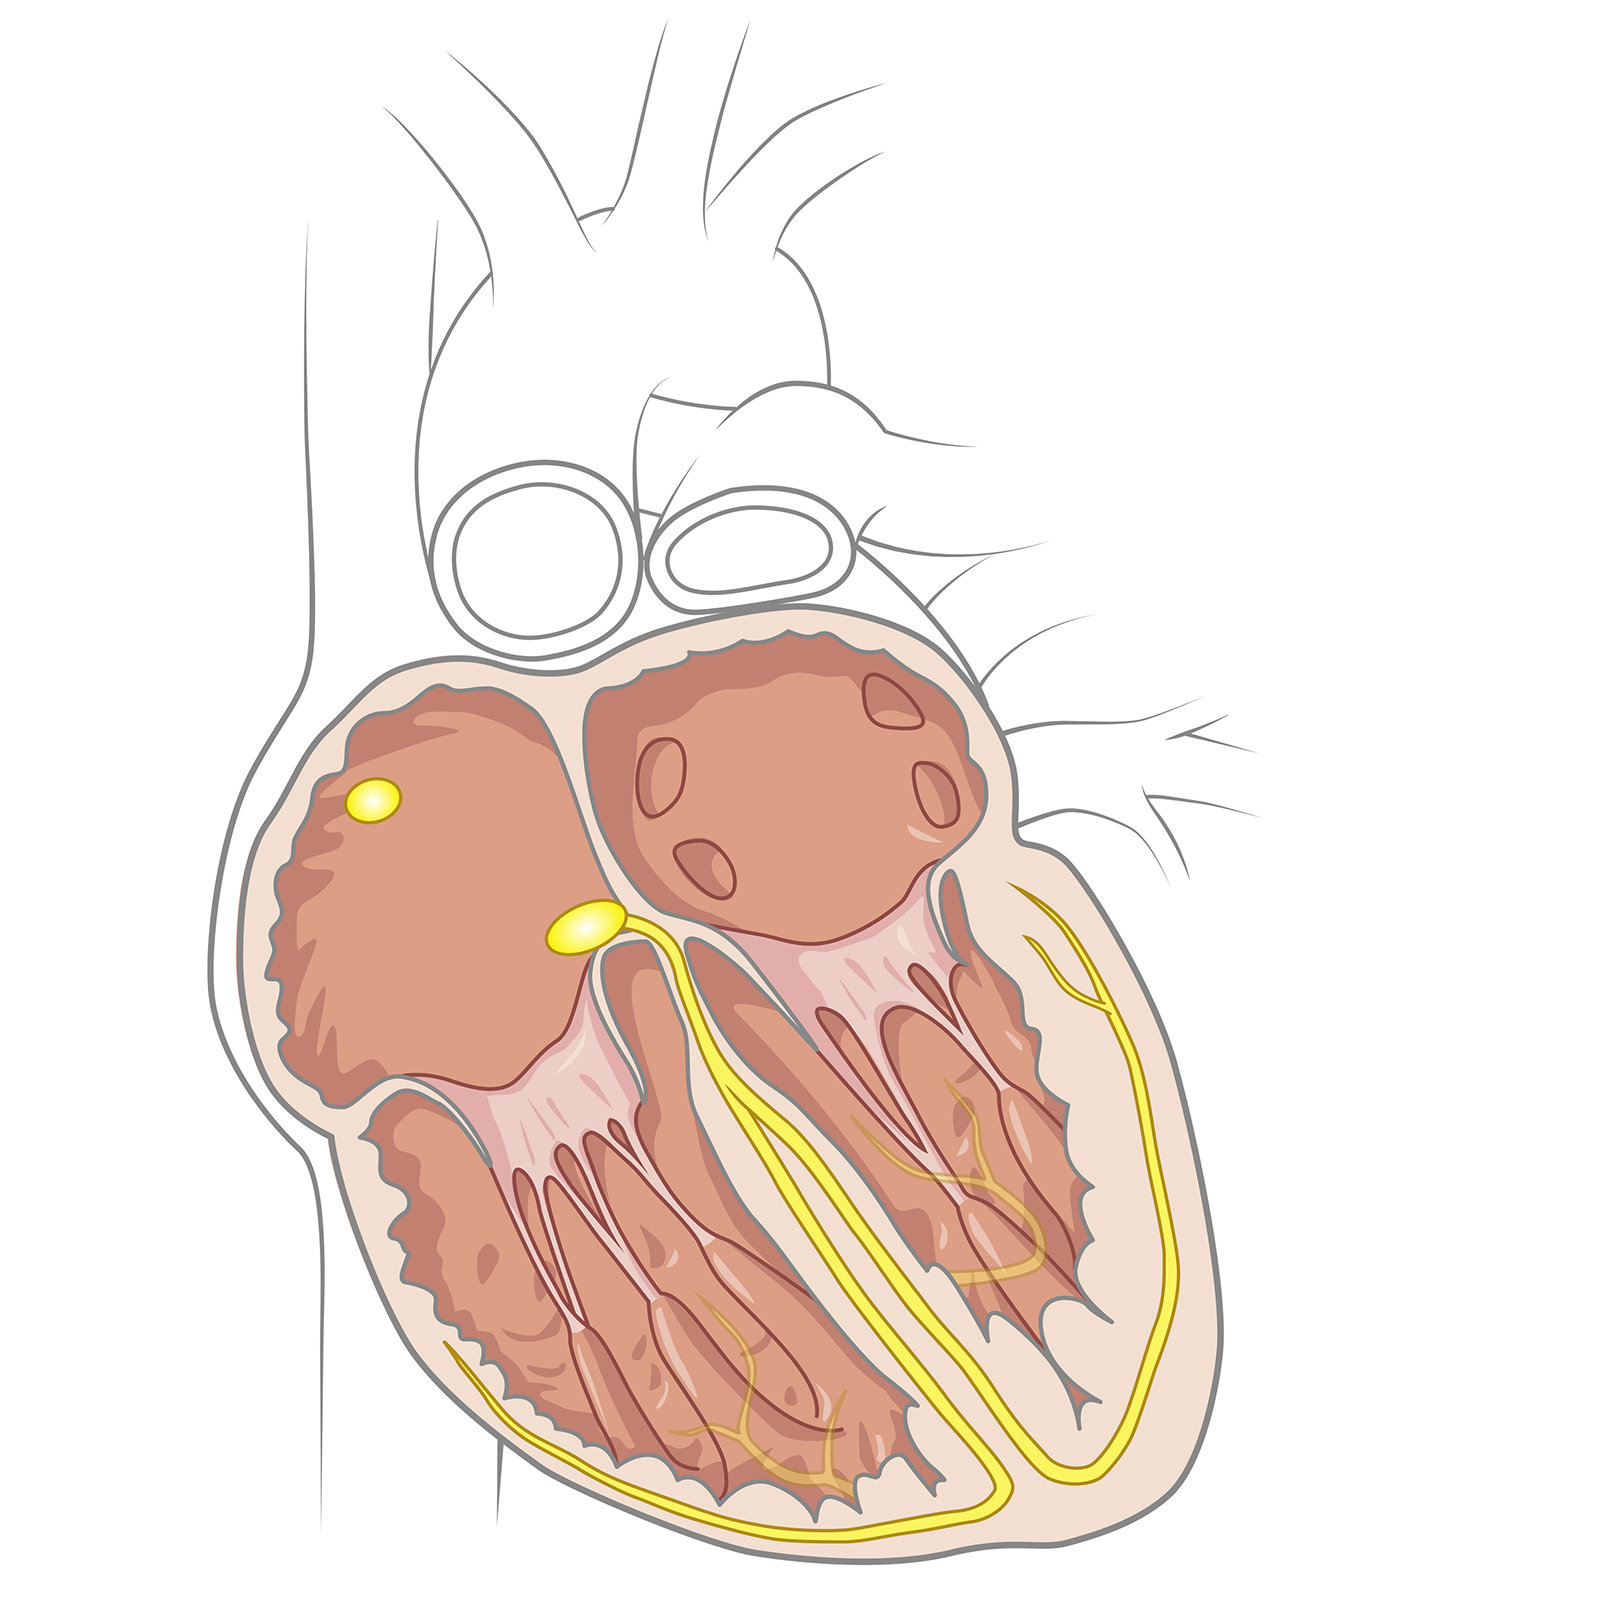 Kardiologie